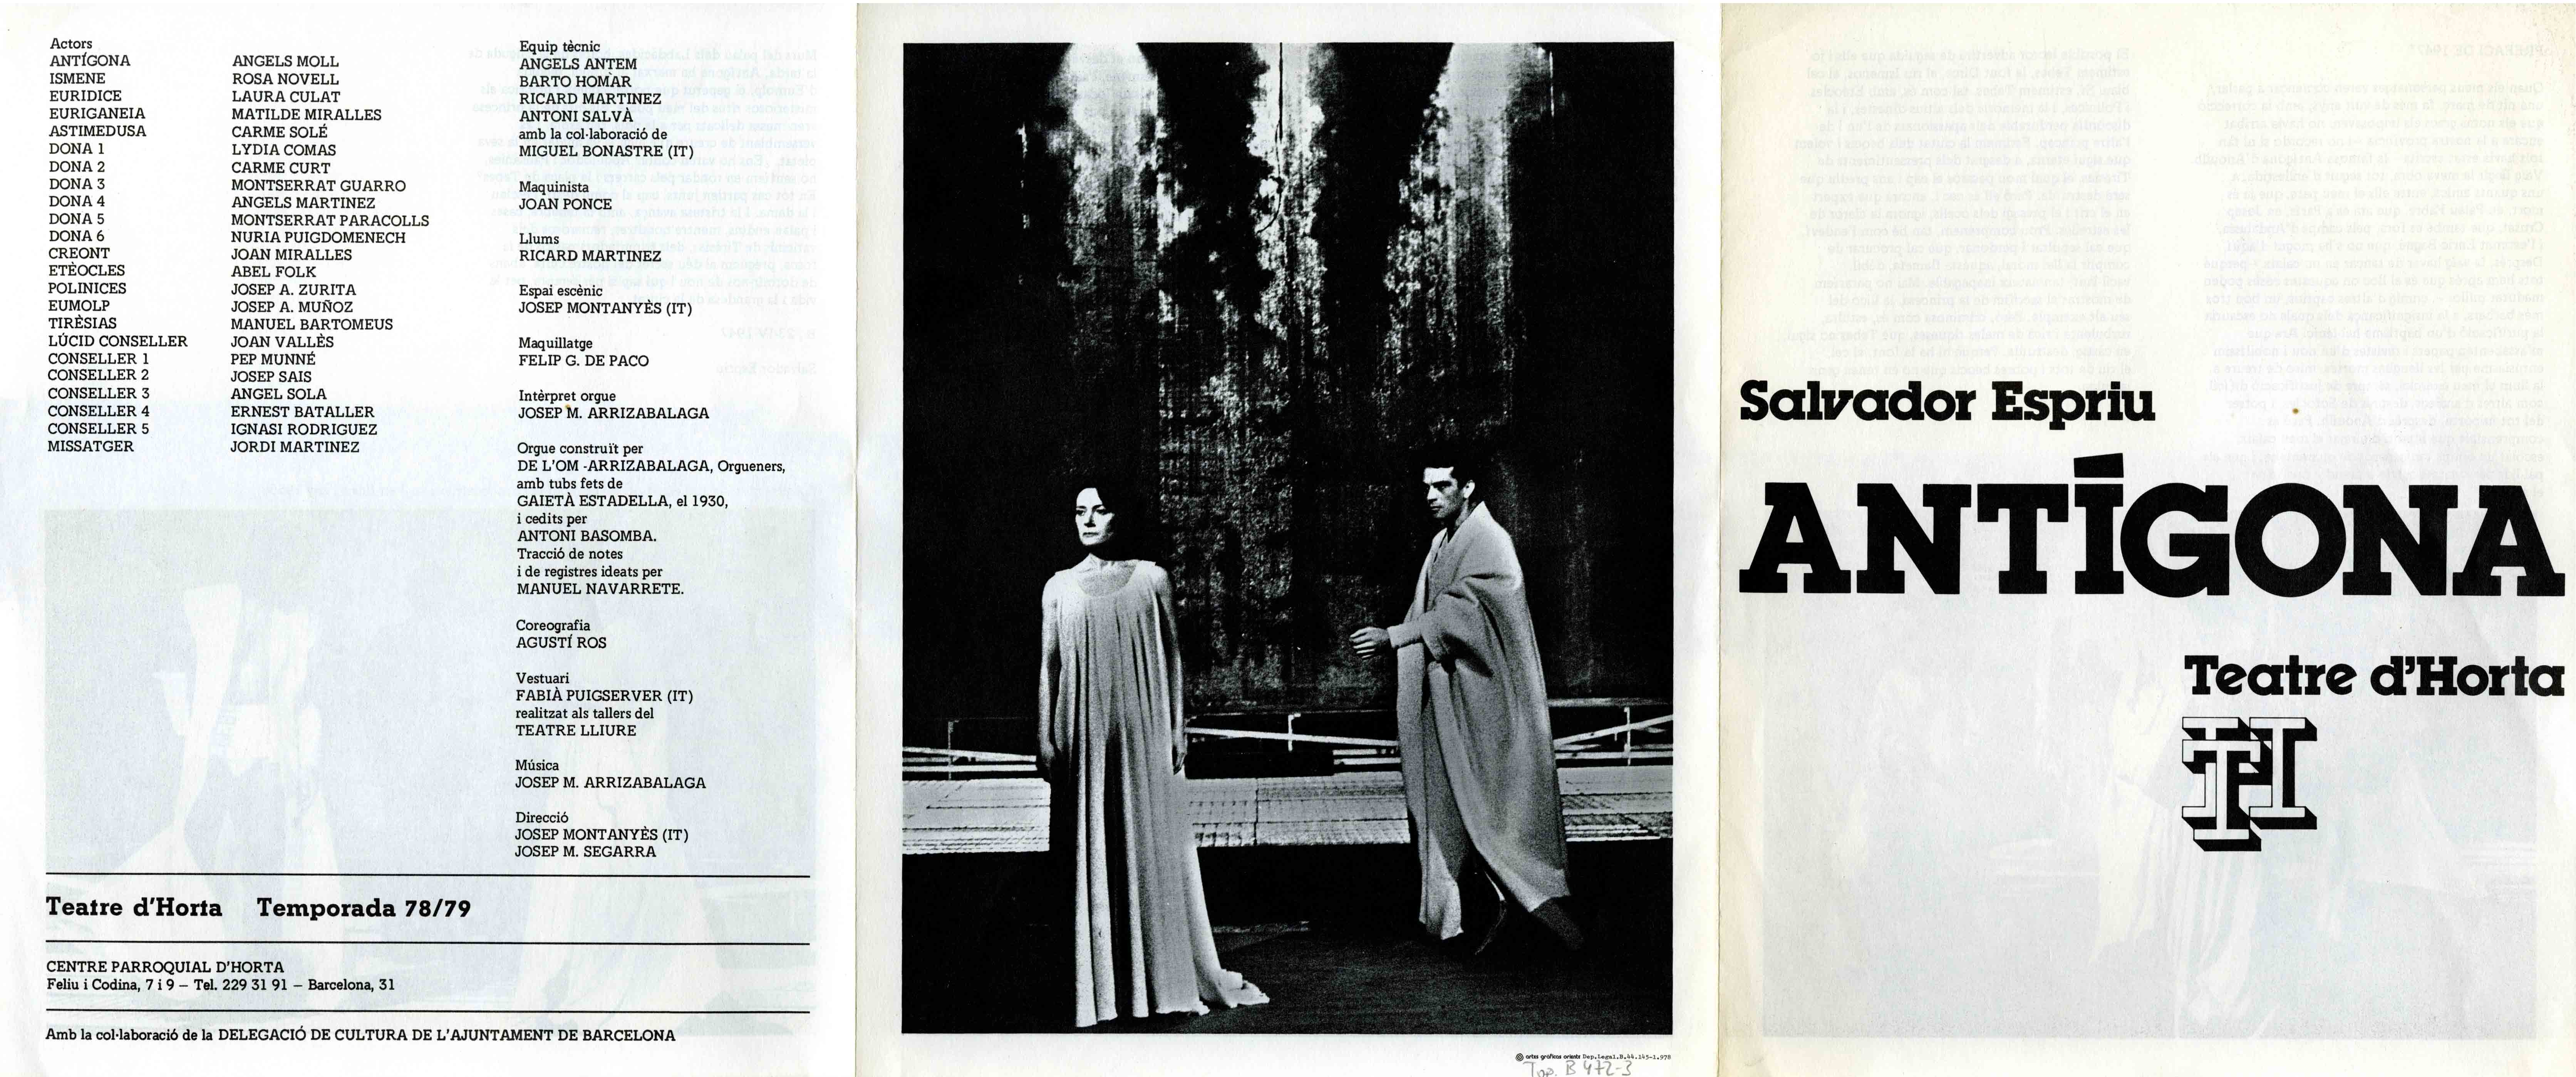 Programa de mà. Antígona. Teatre d'Horta. 1979